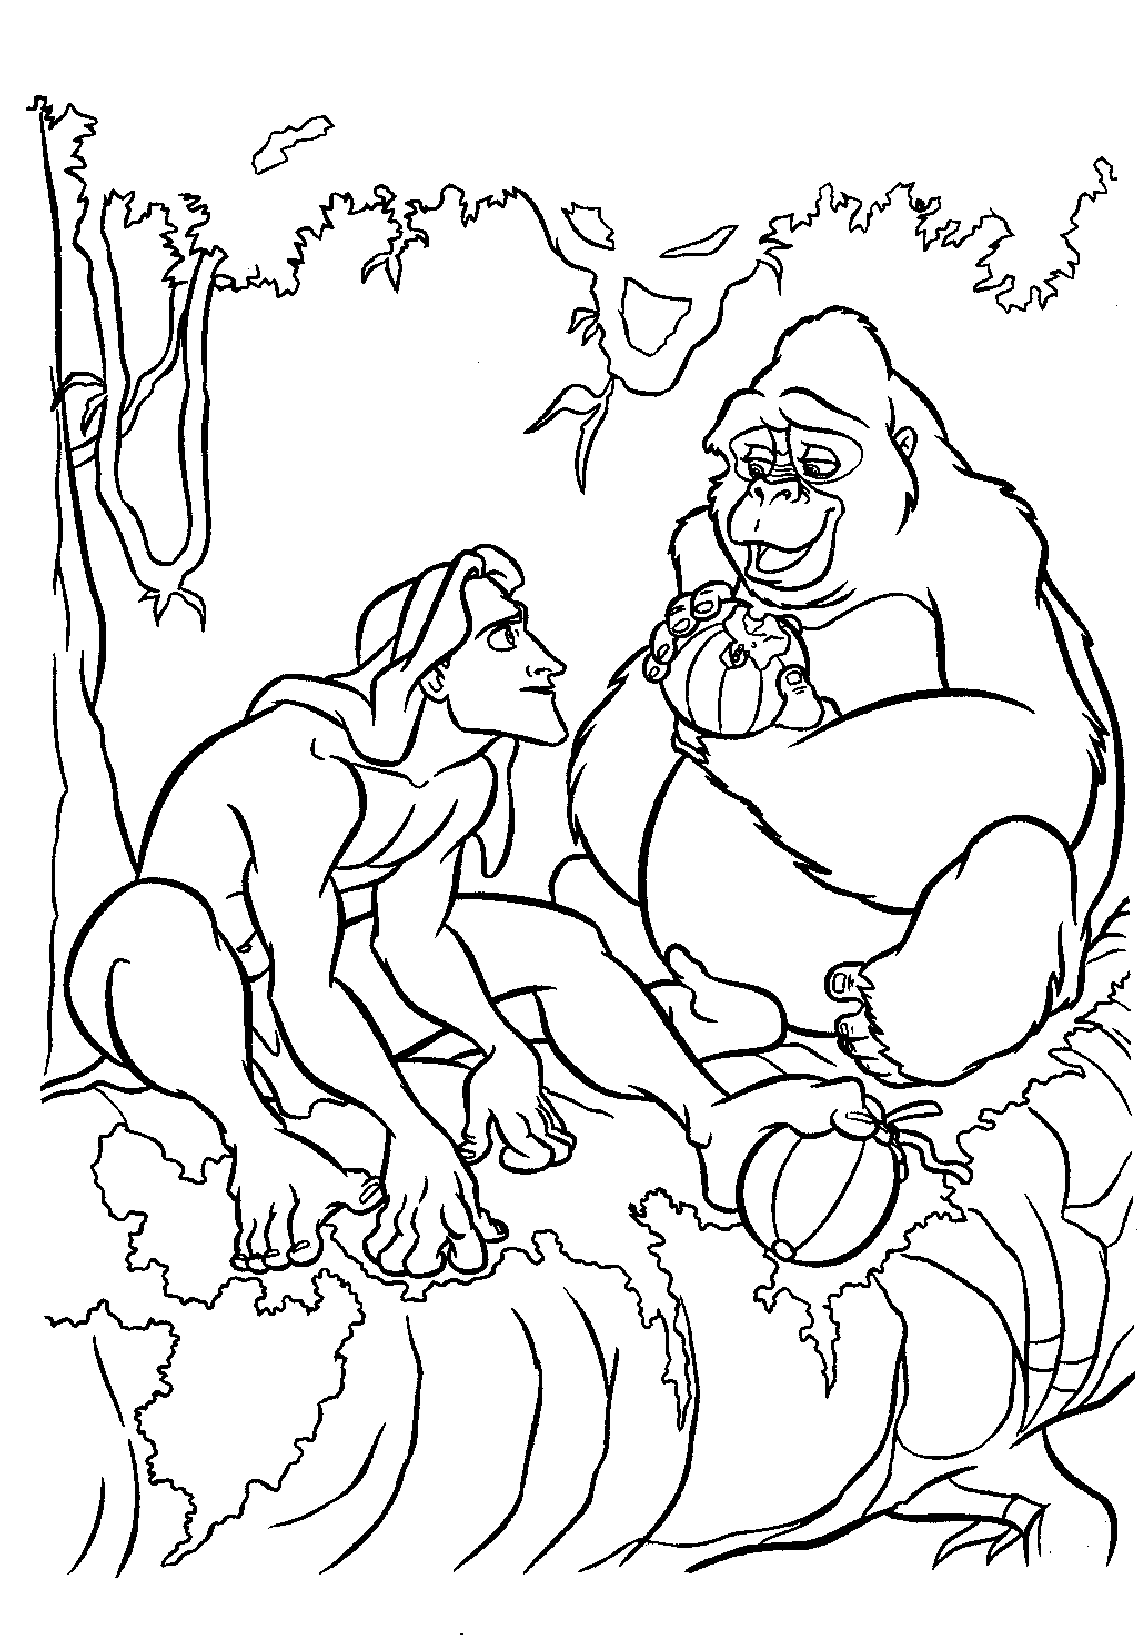 Tarzan adulto para colorir, com a sua mãe adoptiva